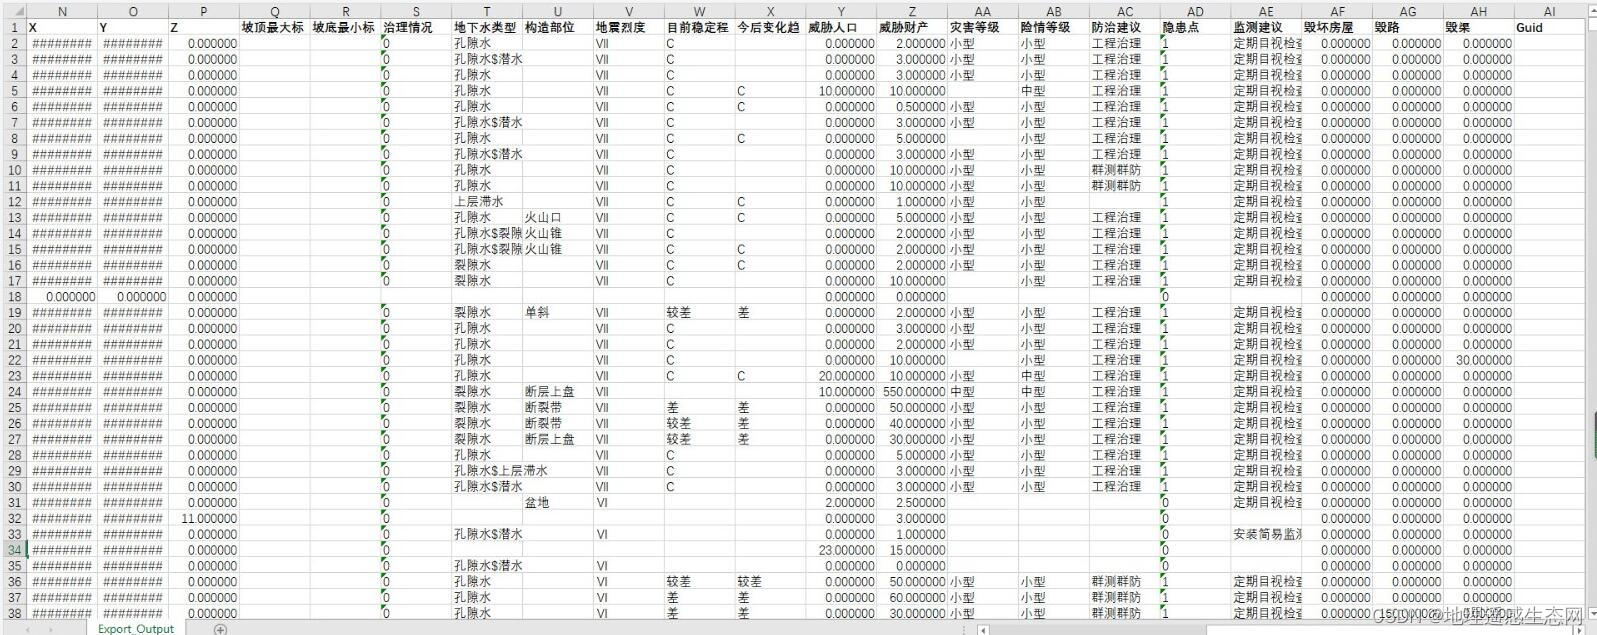 湖北省地质灾害分布数据 崩塌滑坡泥石流空间分布地质灾害详查等数据集